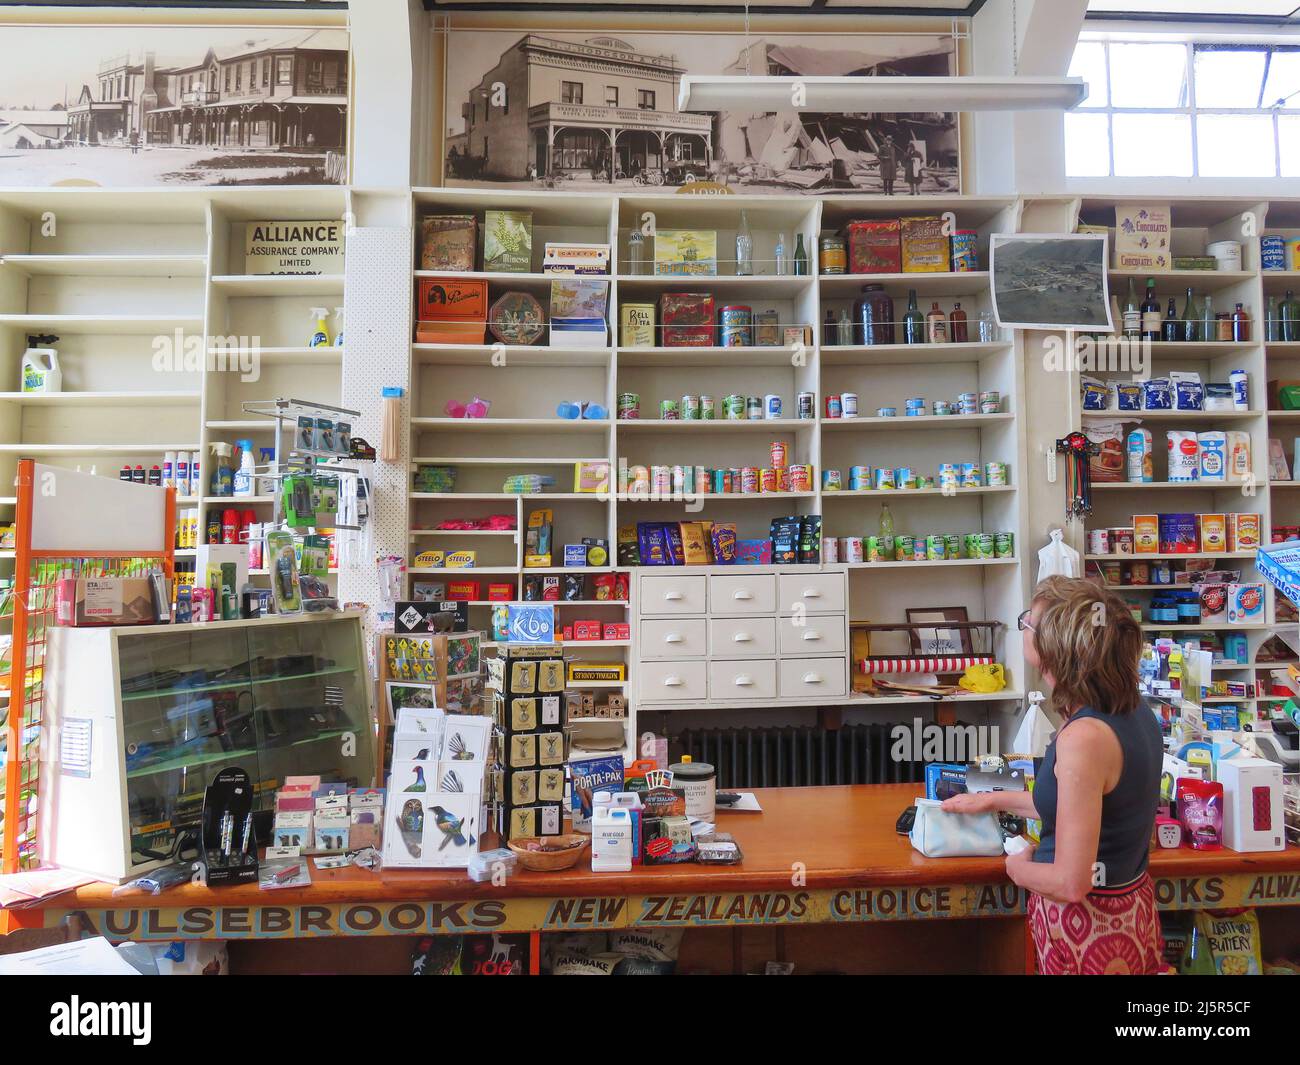 Nouvelle-Zélande - intérieur d'un magasin à Murchison, une ville de la région de Tasman, dans l'île du Sud de la Nouvelle-Zélande. C'est une ville de service rural pour le surr Banque D'Images